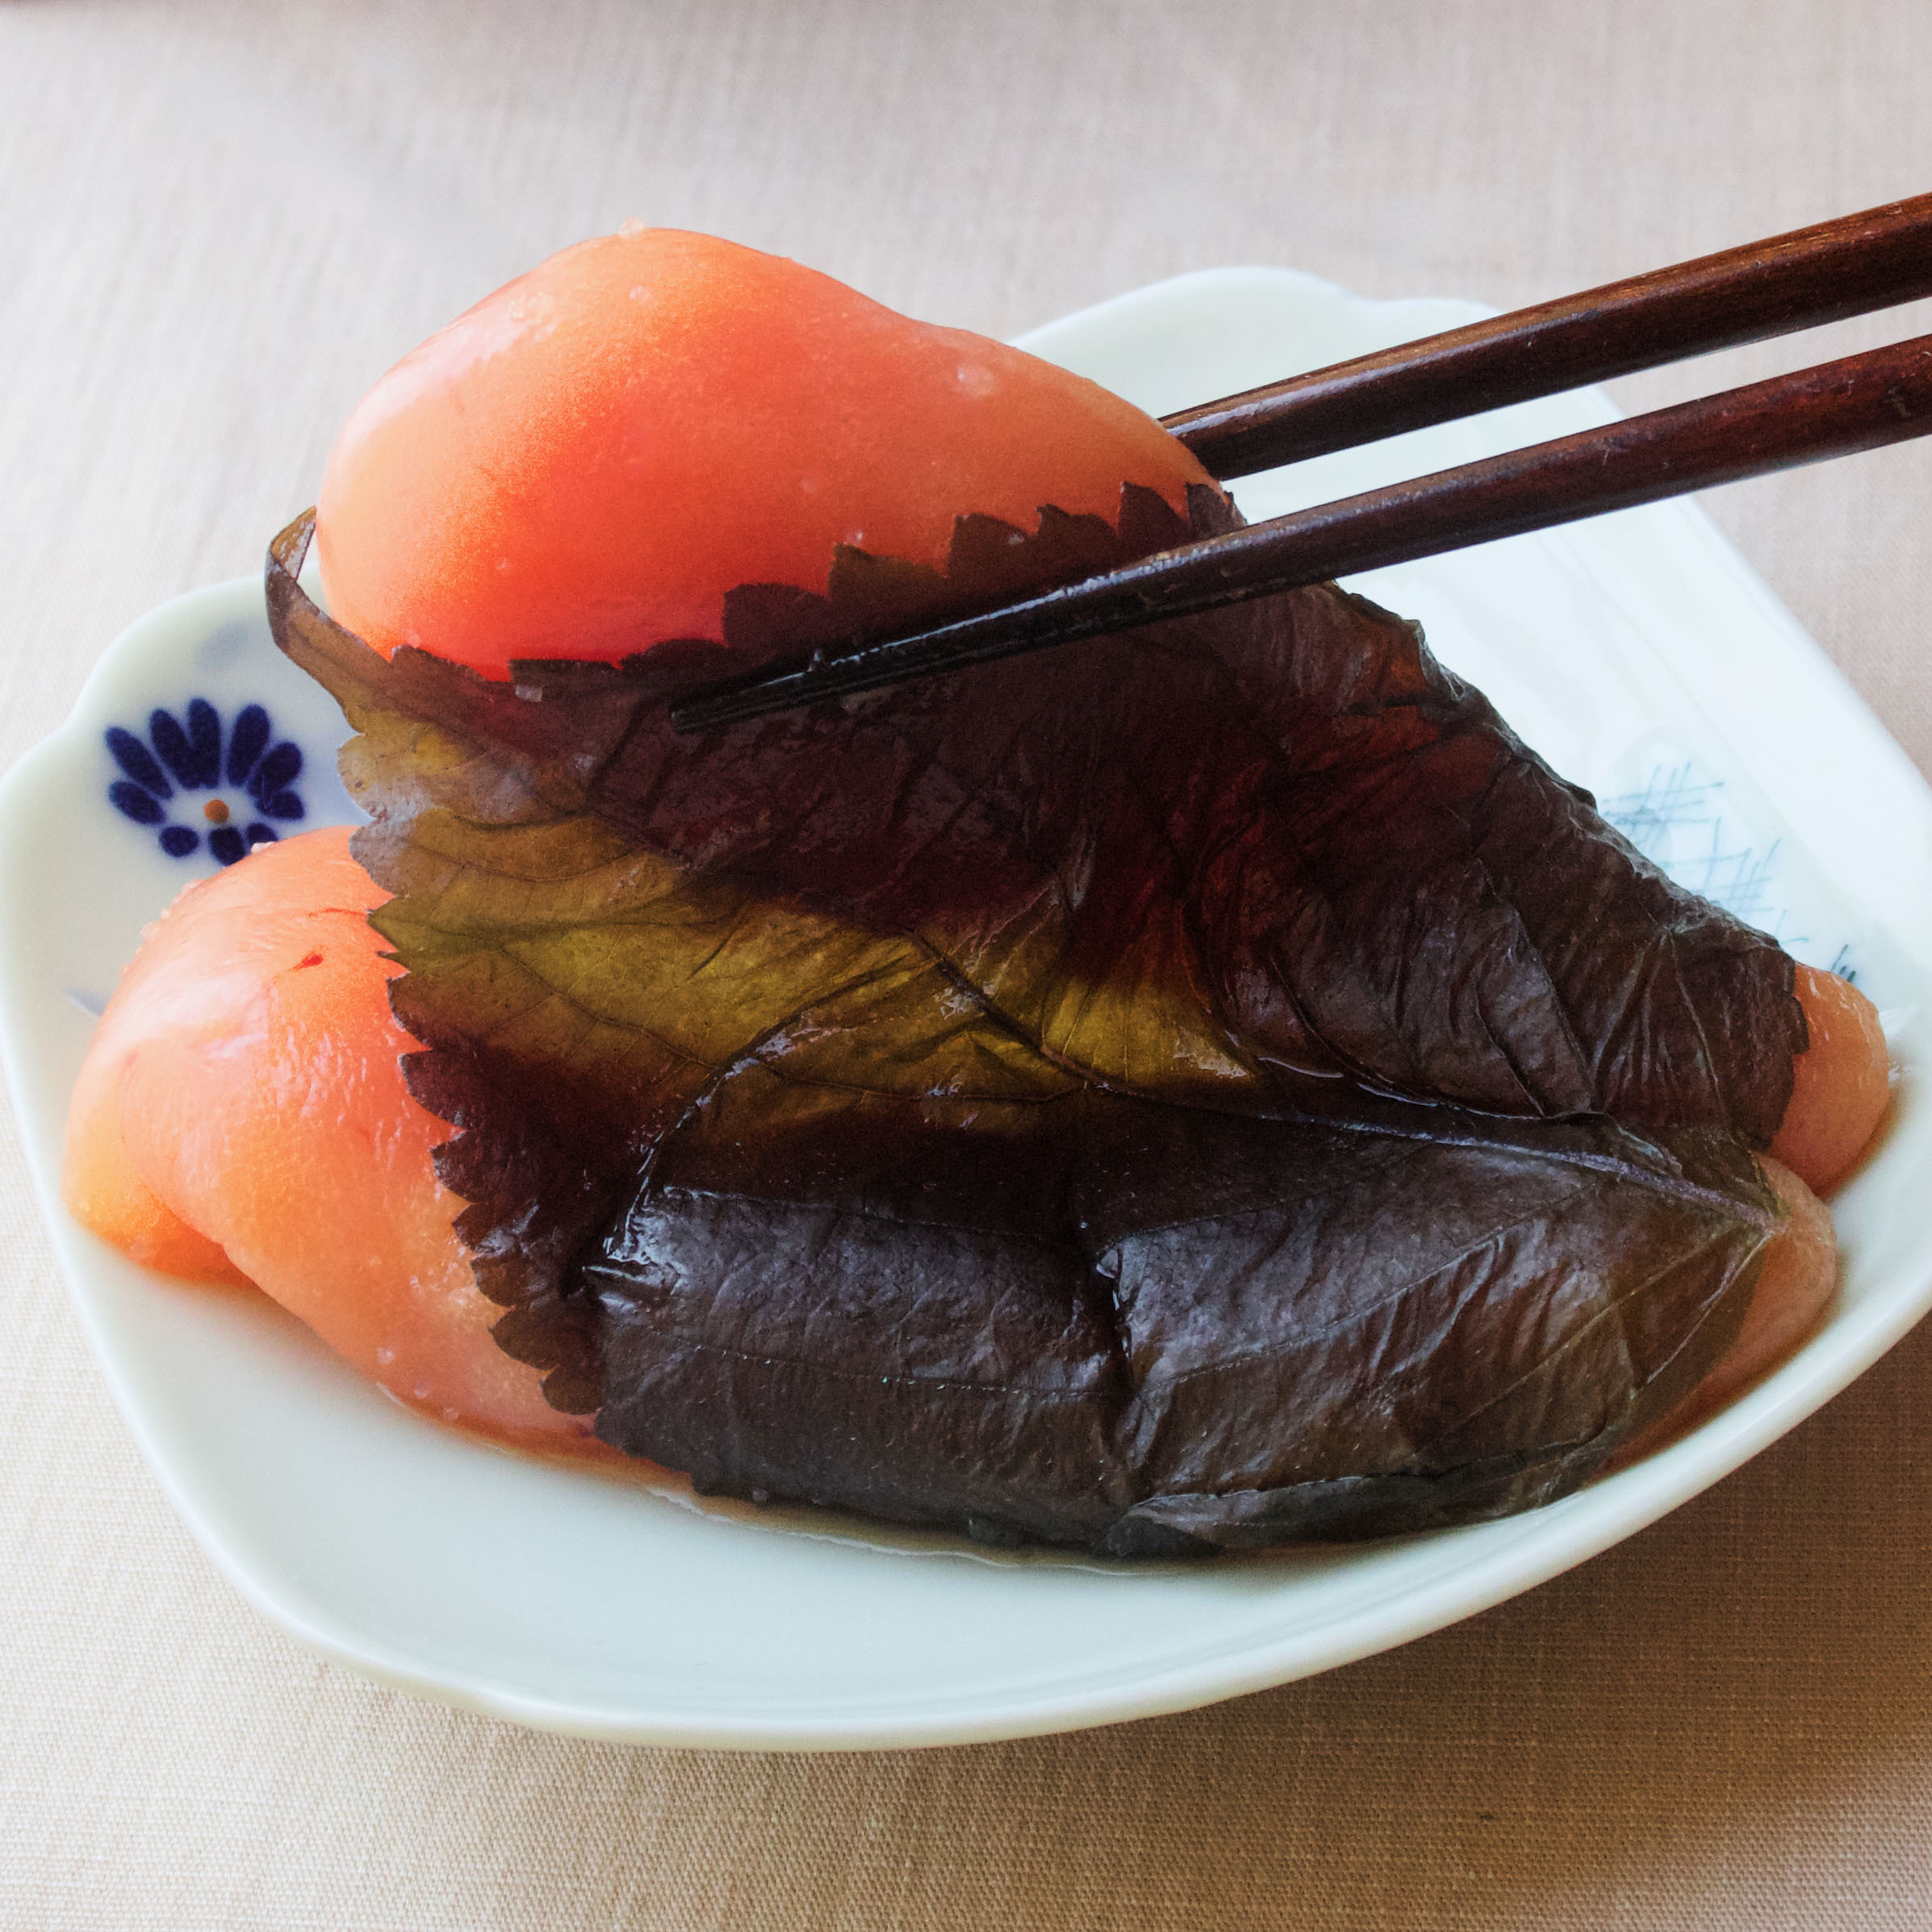 旬の京都大原の赤紫蘇を使った爽やかな味わいのめんたいこ
「京のめんたい 大原赤紫蘇」が販売開始